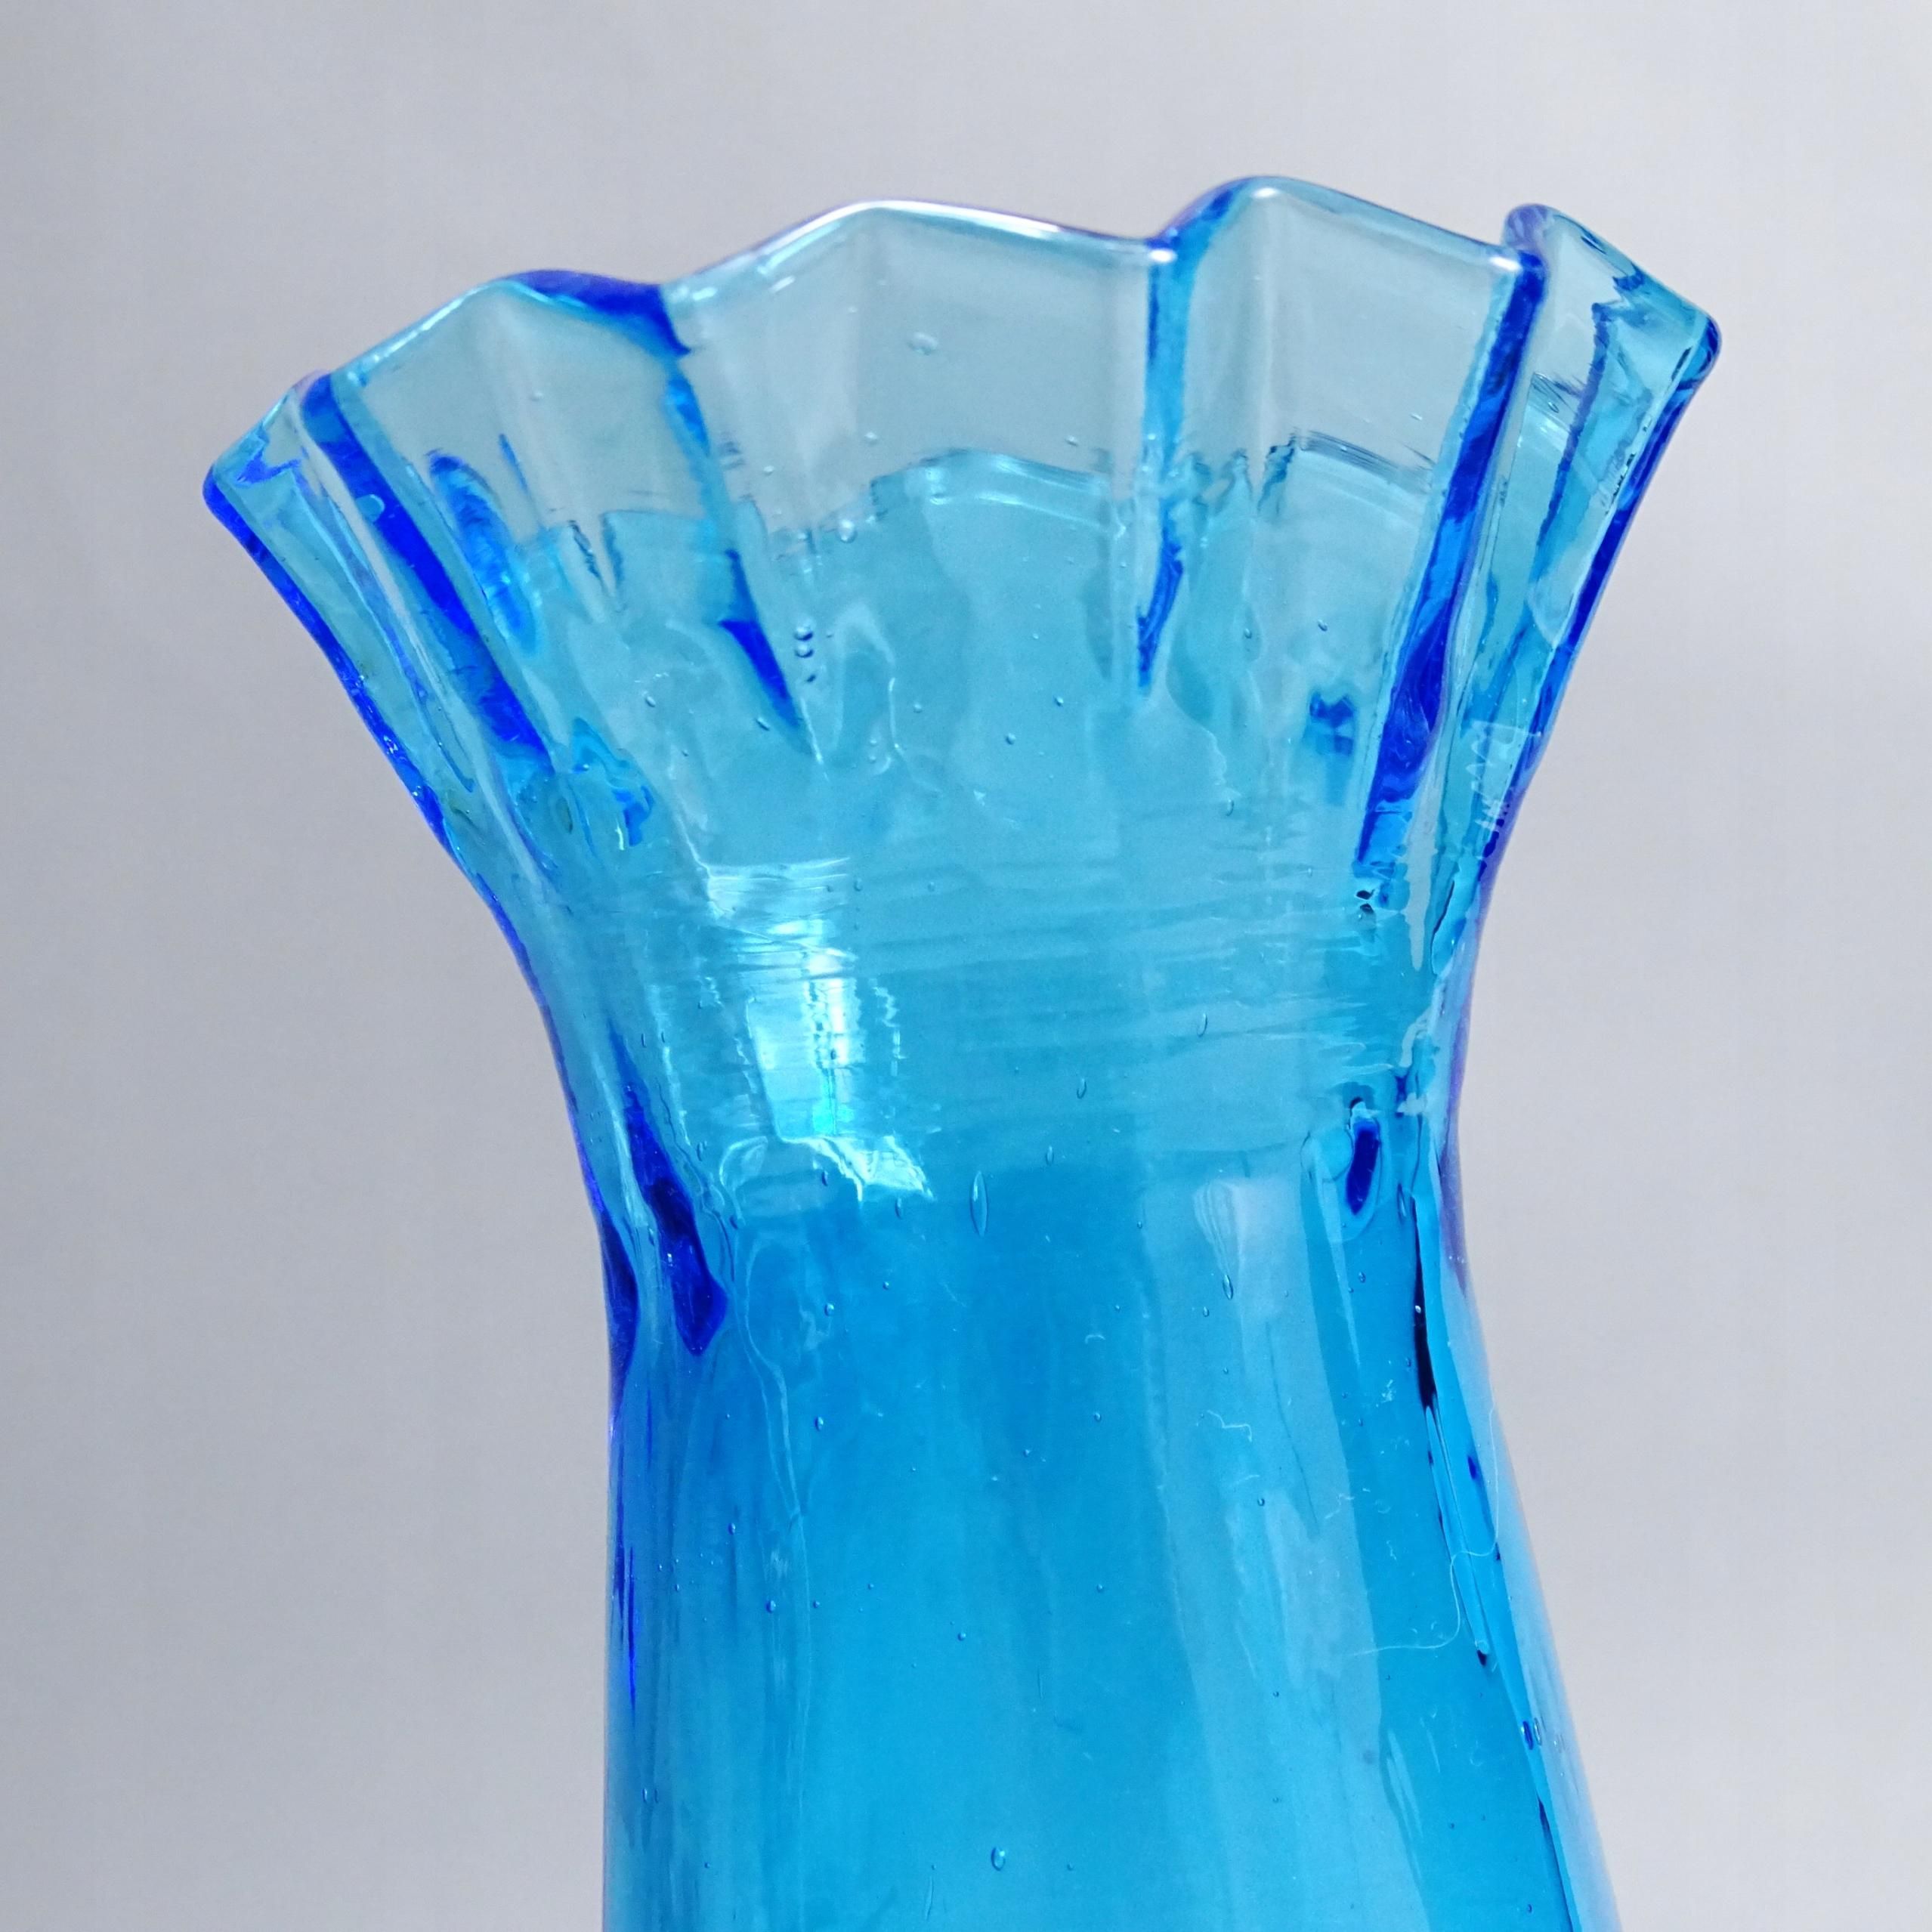 przełom xix/xx w. niebieski szklany wazon na hiacynty